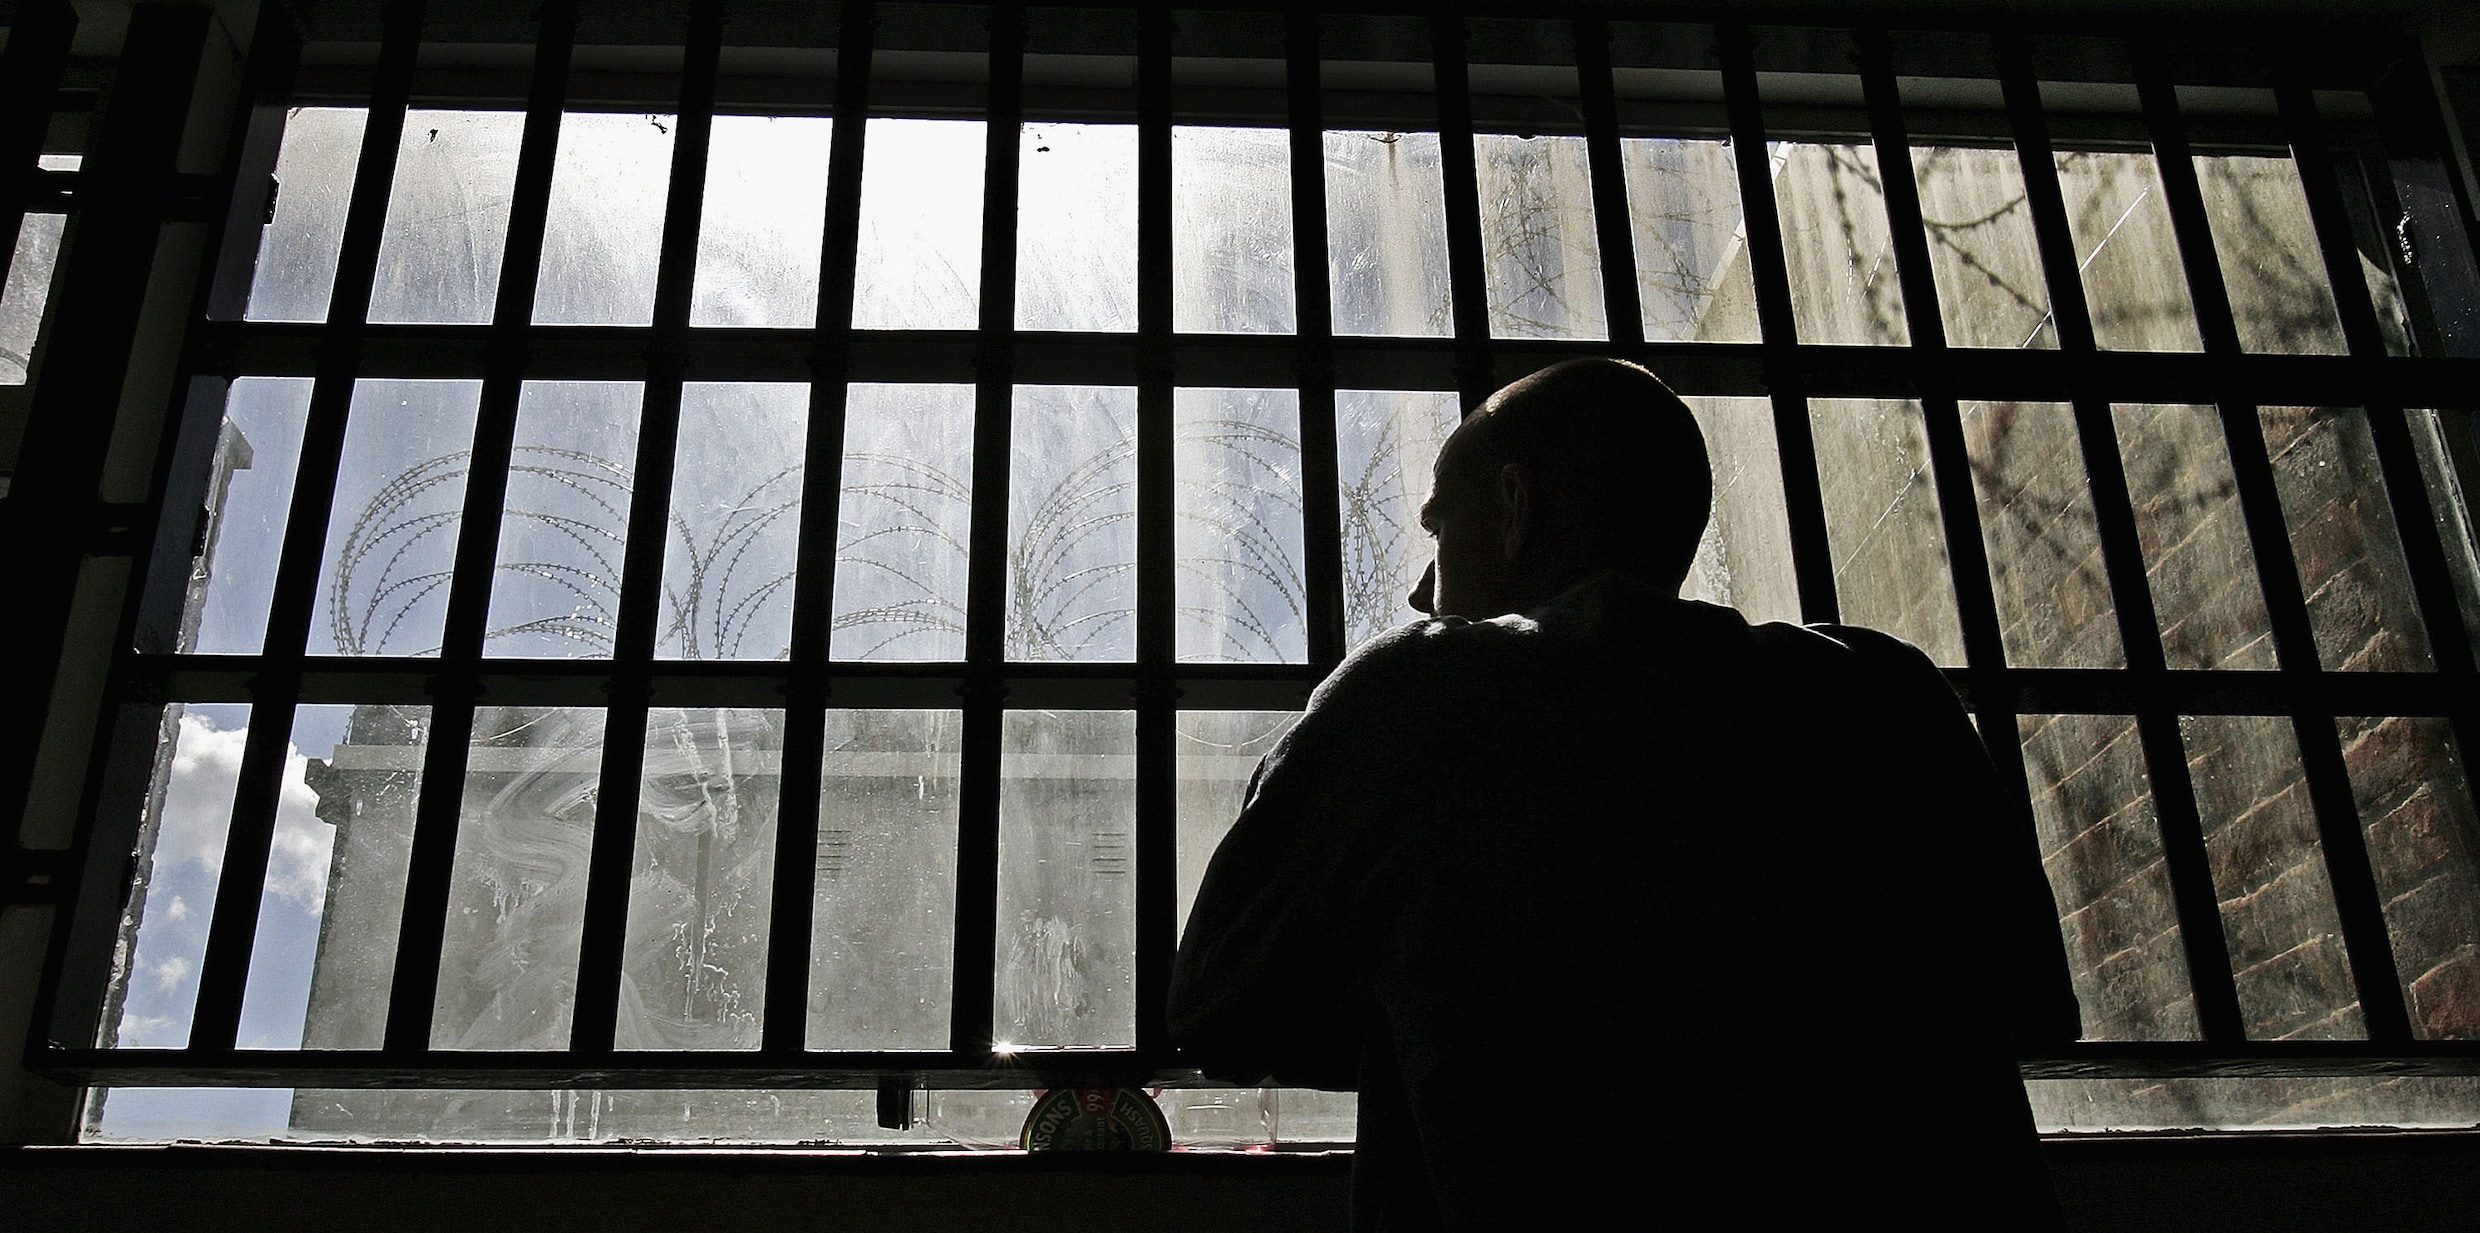 ‘Oud worden betekent kwetsbaar worden. In de gevangenis is dat schrijnend’: hoelang moet levenslang duren?